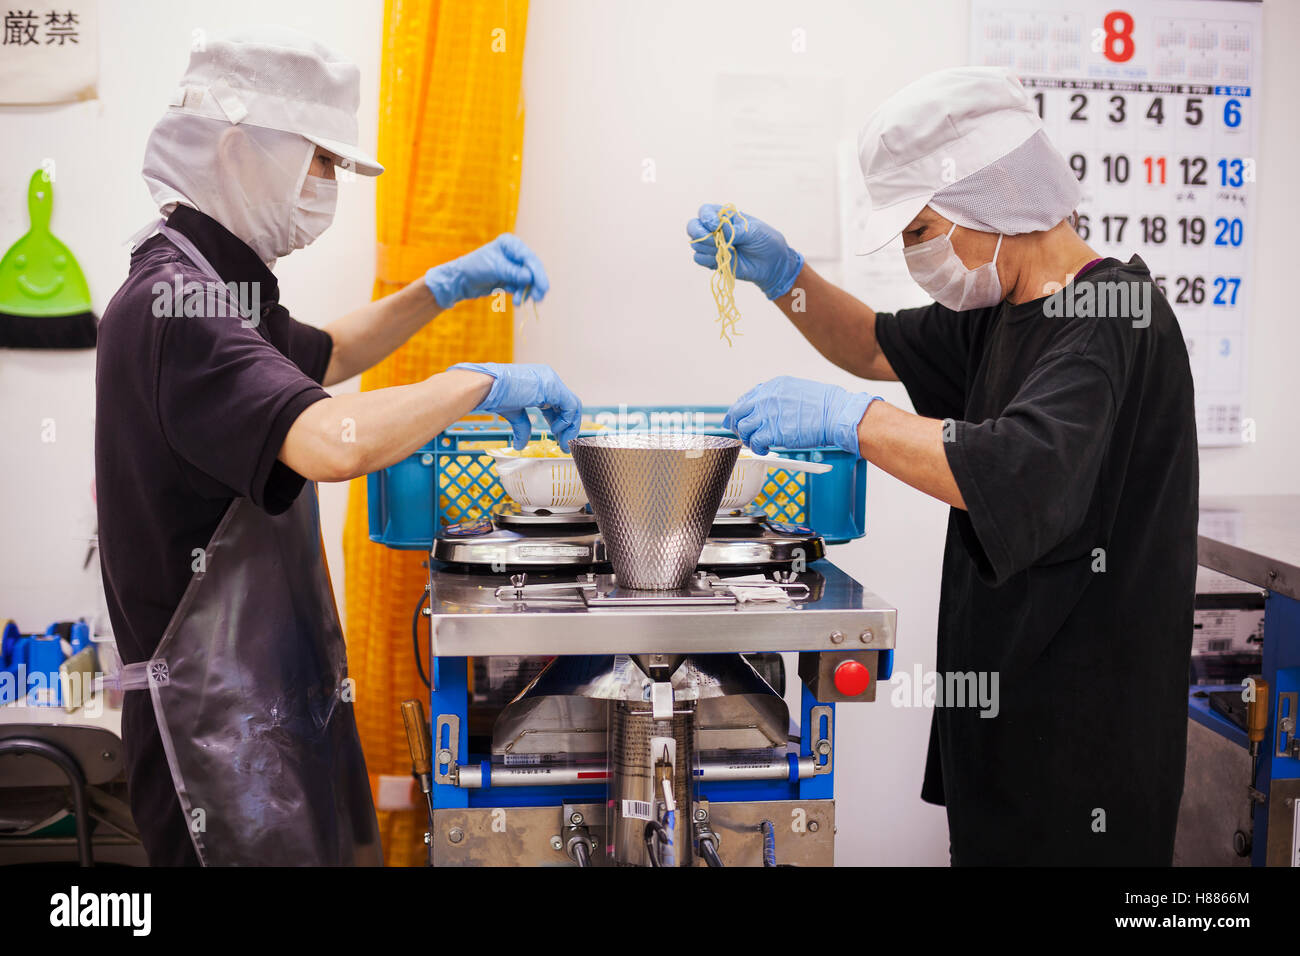 Arbeiter in Schürzen und Handschuhe, wiegen und Verpacken frisch Nudeln in einer Produktionseinheit Soba Nudeln gemacht. Stockfoto